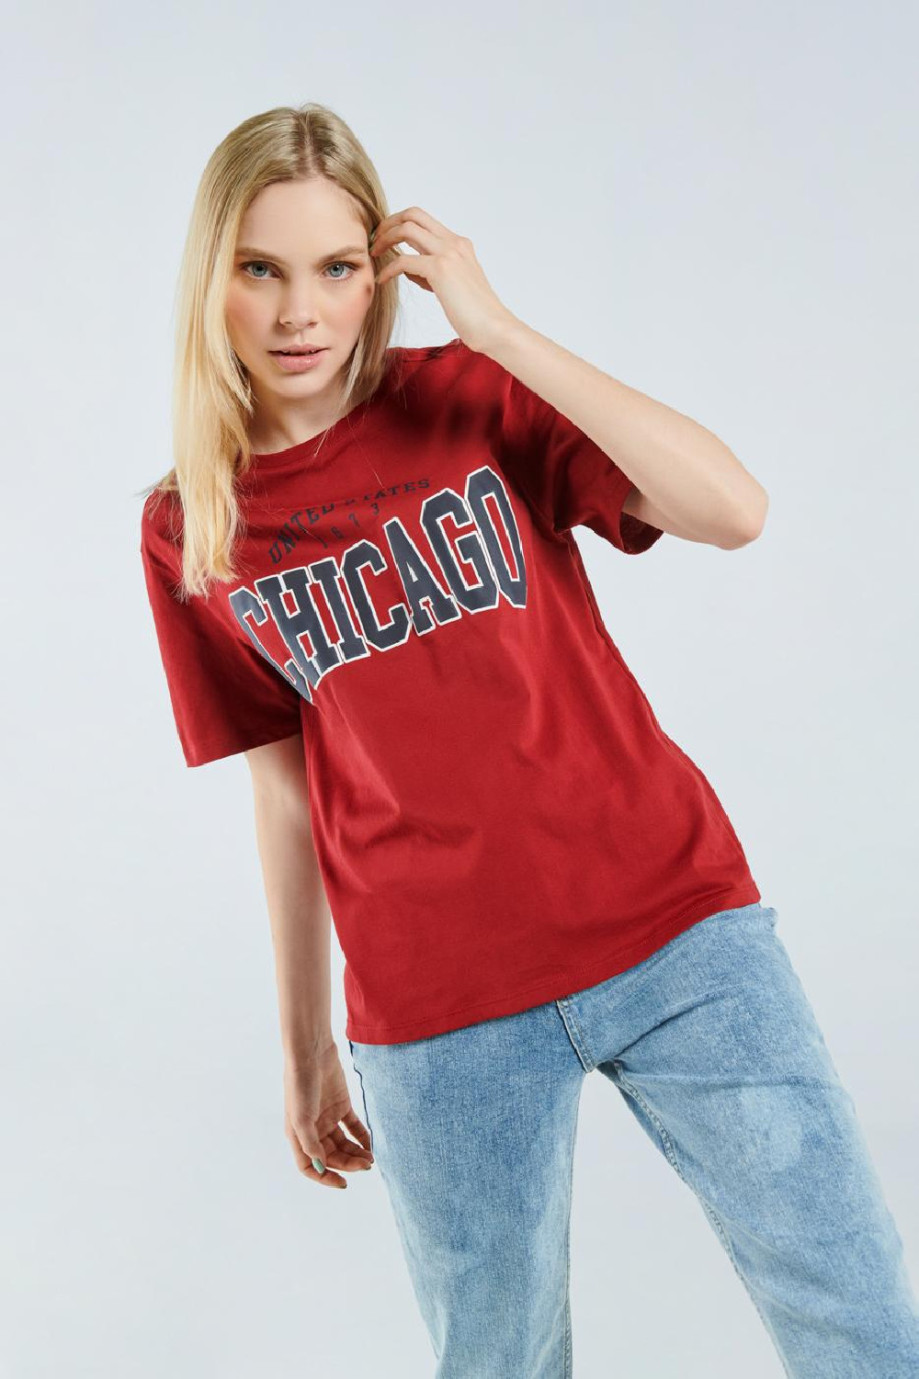 Camiseta cuello redondo roja intensa con texto college azul de Chicago